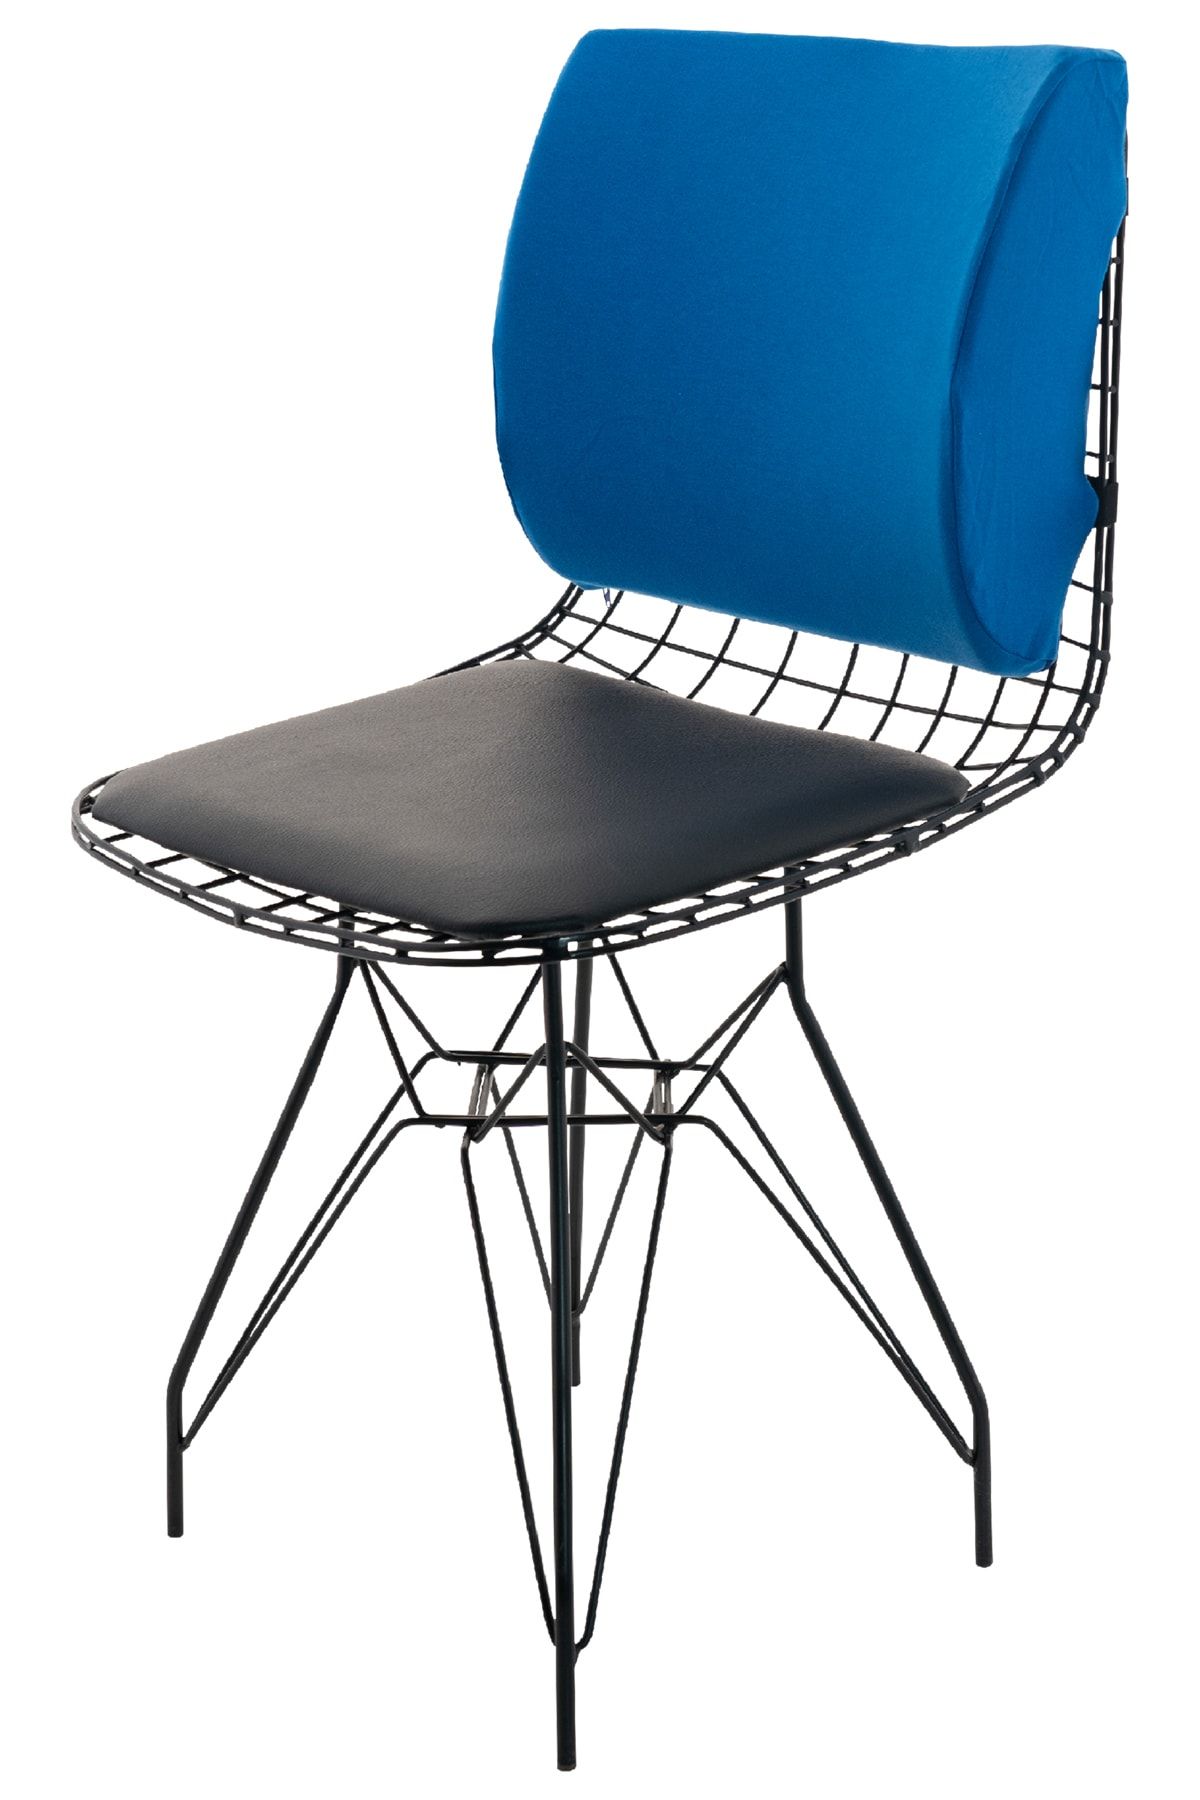 Viscofoam Ortopedik Bel Yastığı Ofis Sandalye Araç Koltuk Bel Destek Yastığı Visco Bel Yastığı Saks Mavisi